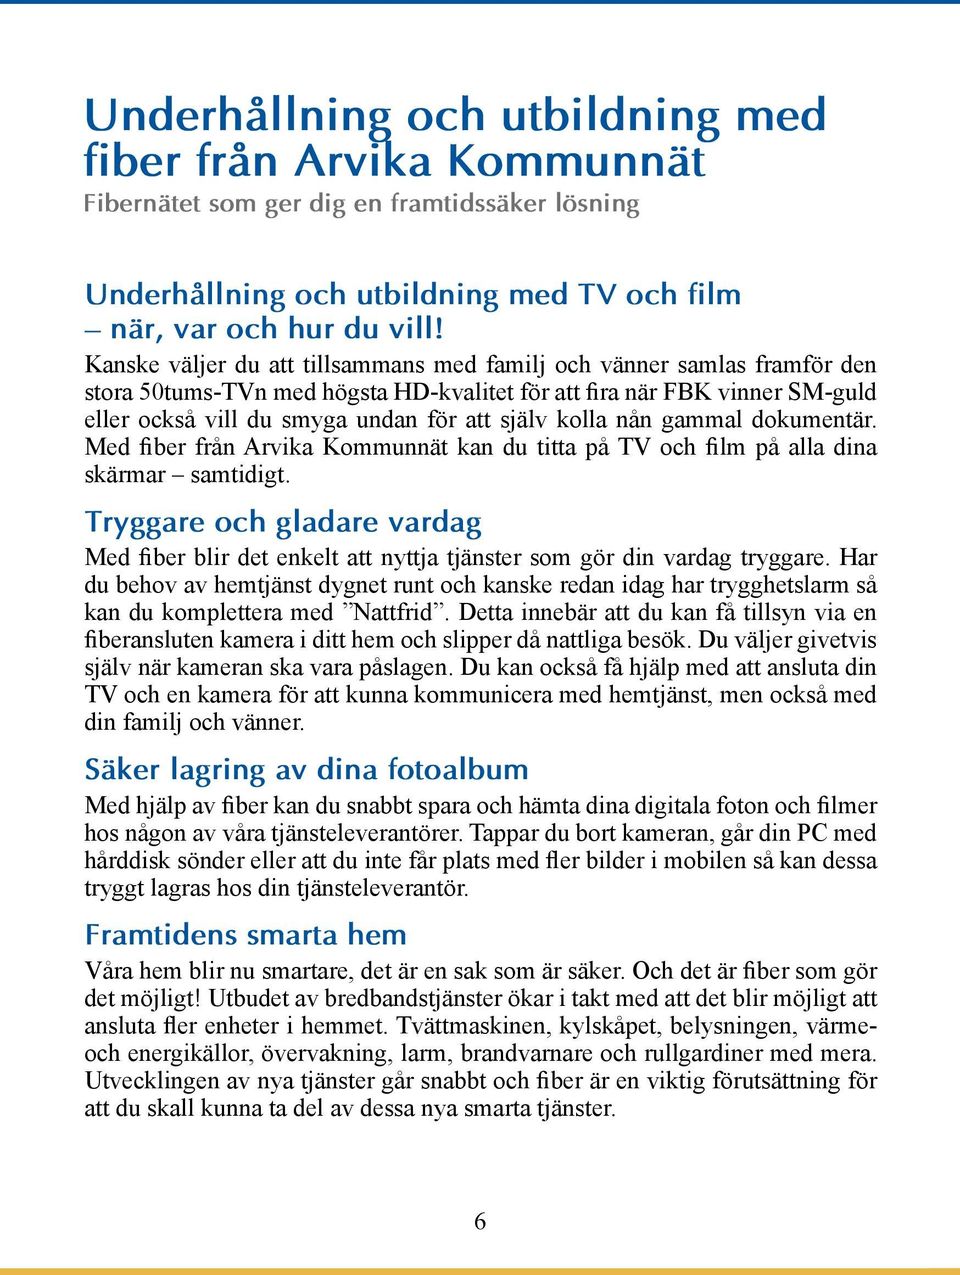 kolla nån gammal dokumentär. Med fiber från Arvika Kommunnät kan du titta på TV och film på alla dina skärmar samtidigt.